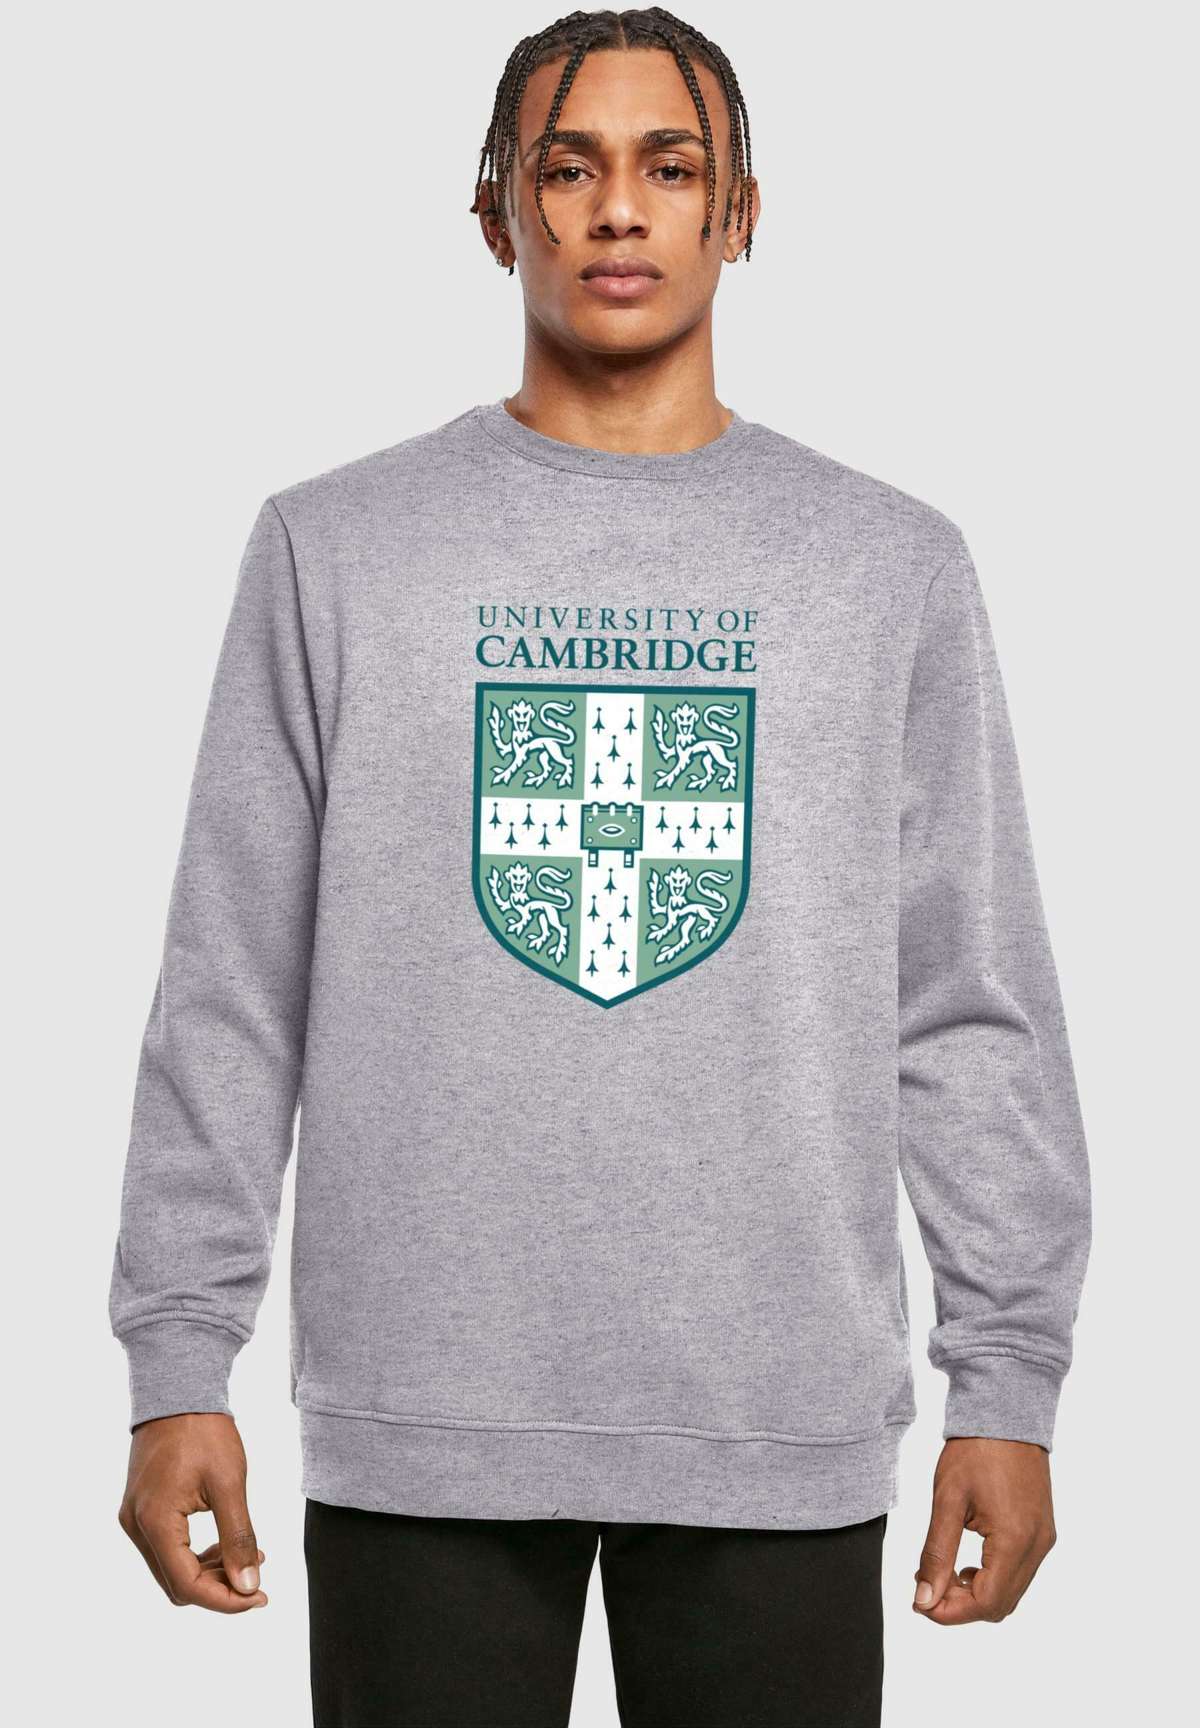 Кофта UNIVERSITY OF CAMBRIDGE-SHIELD CREWNECK